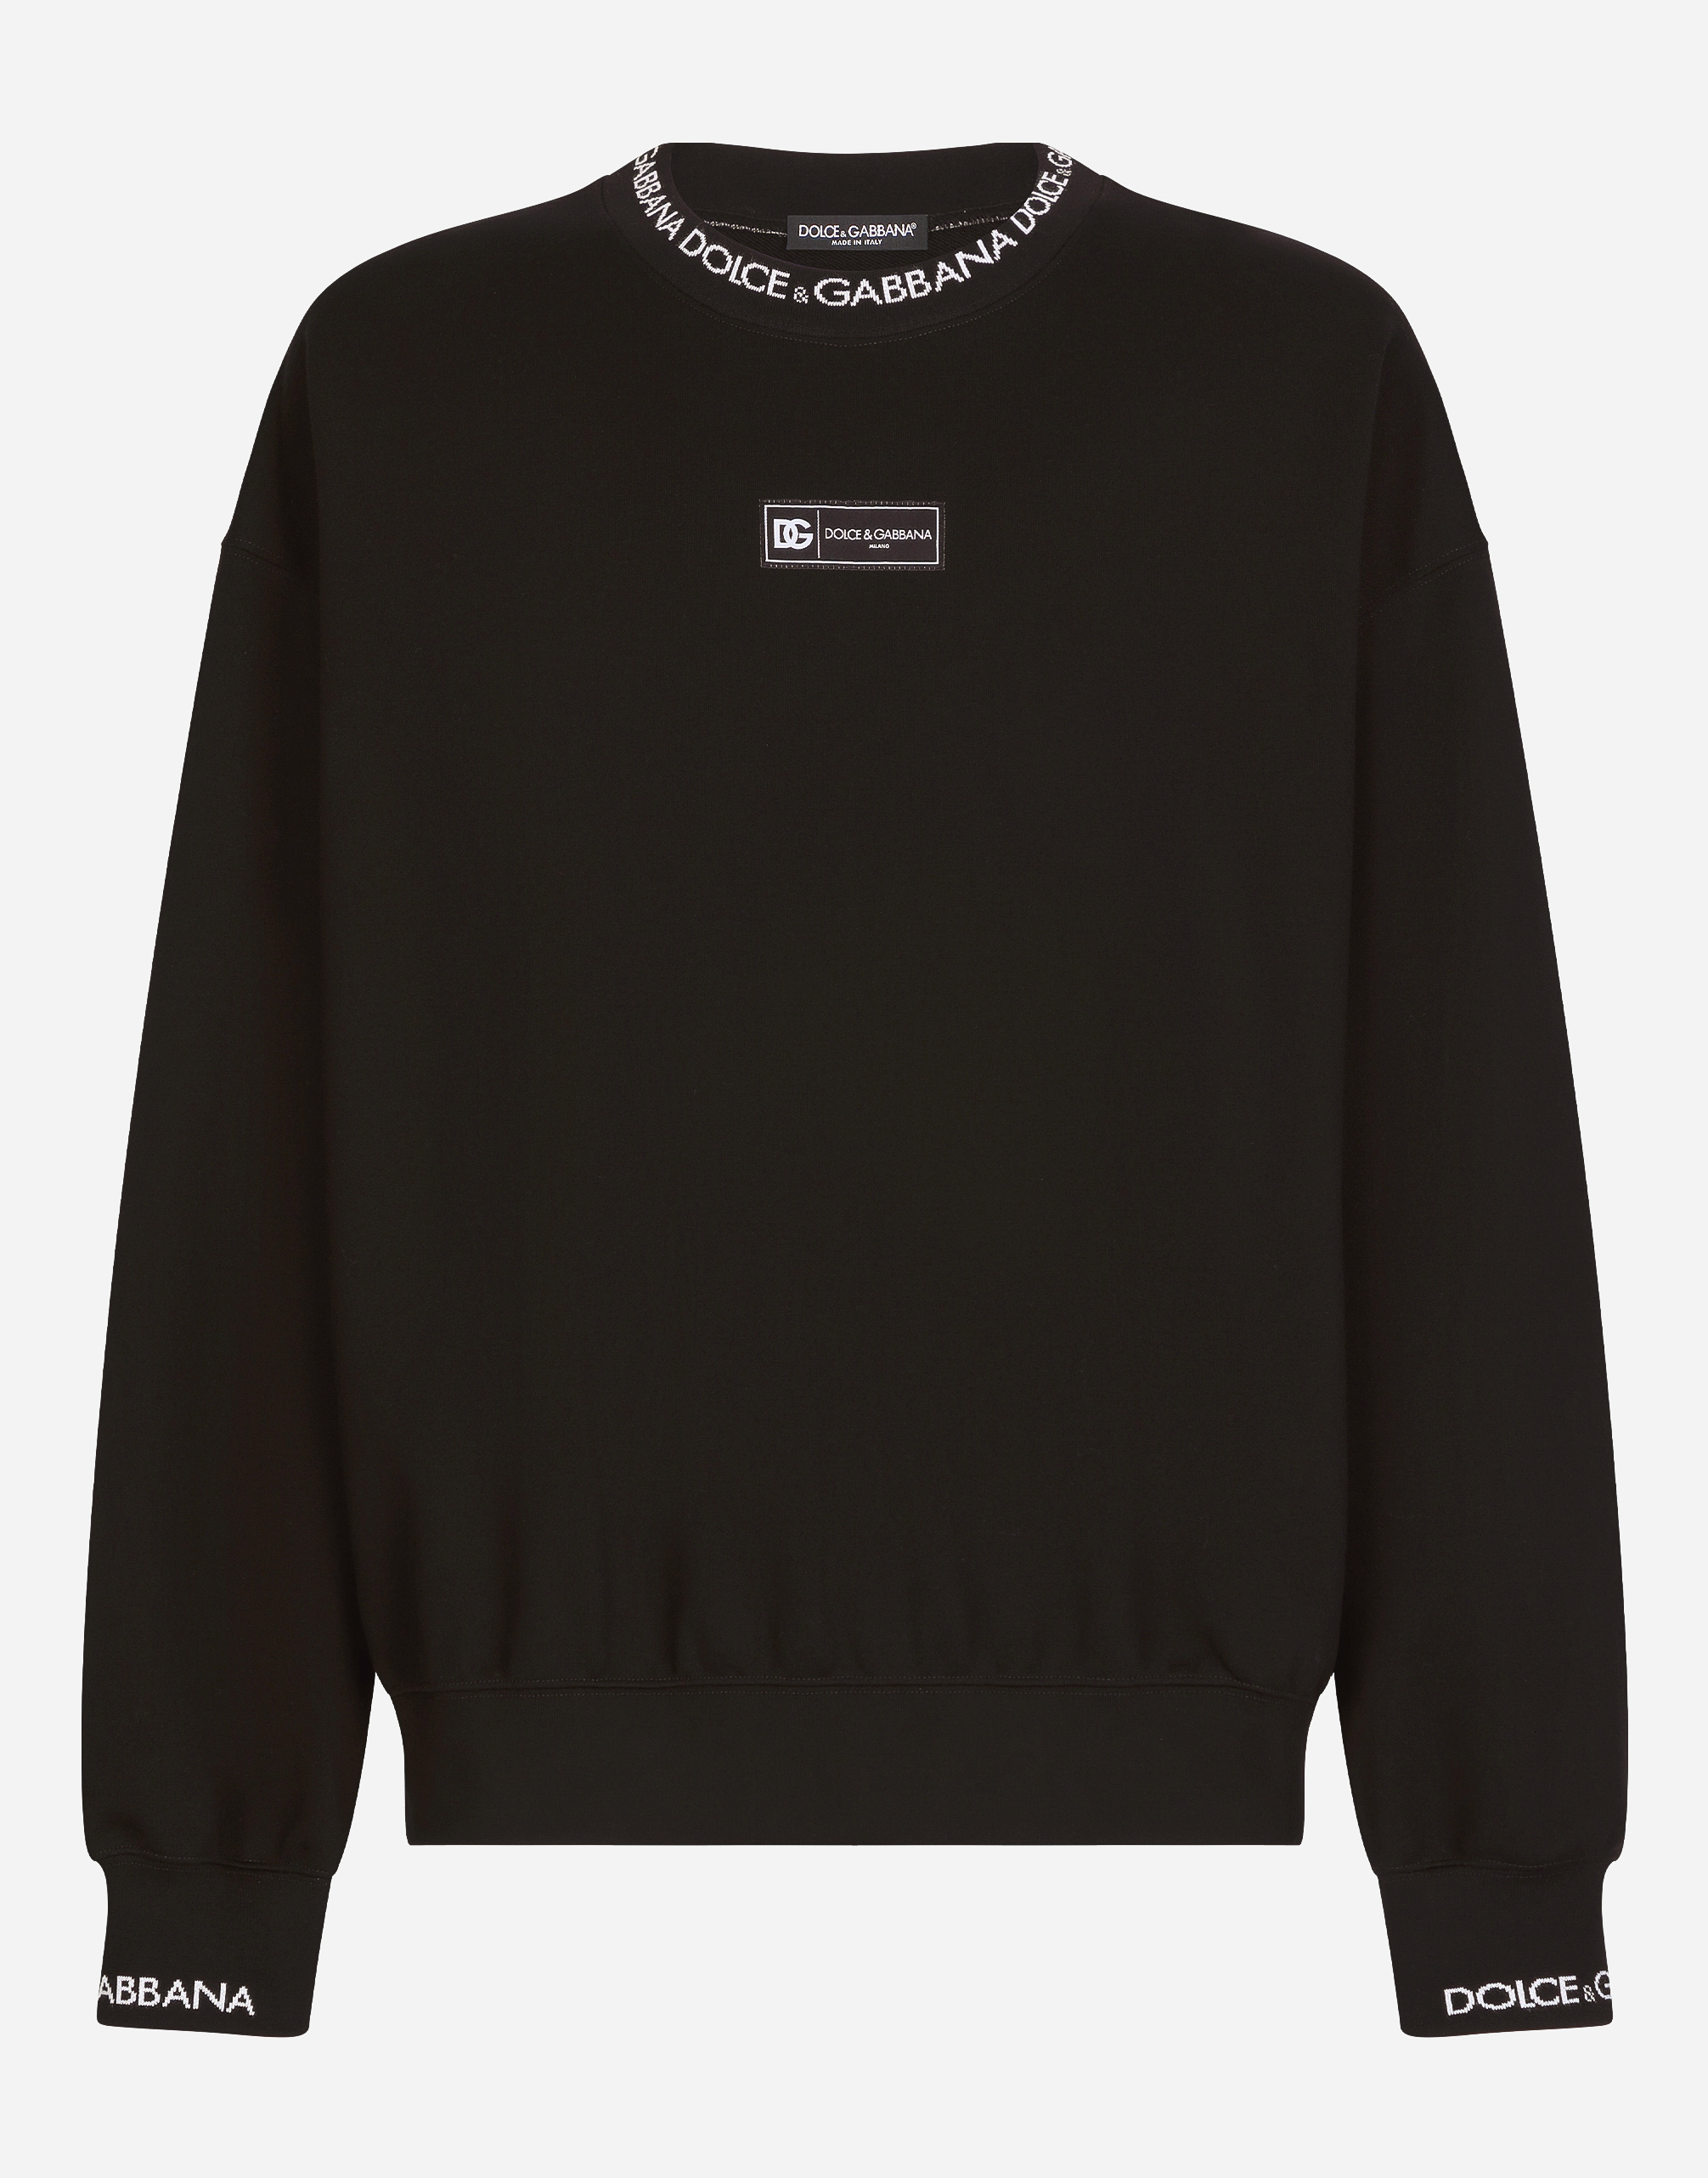 Dolce & Gabbana Round-neck Sweatshirt With Dolce&gabbana Logo In Black